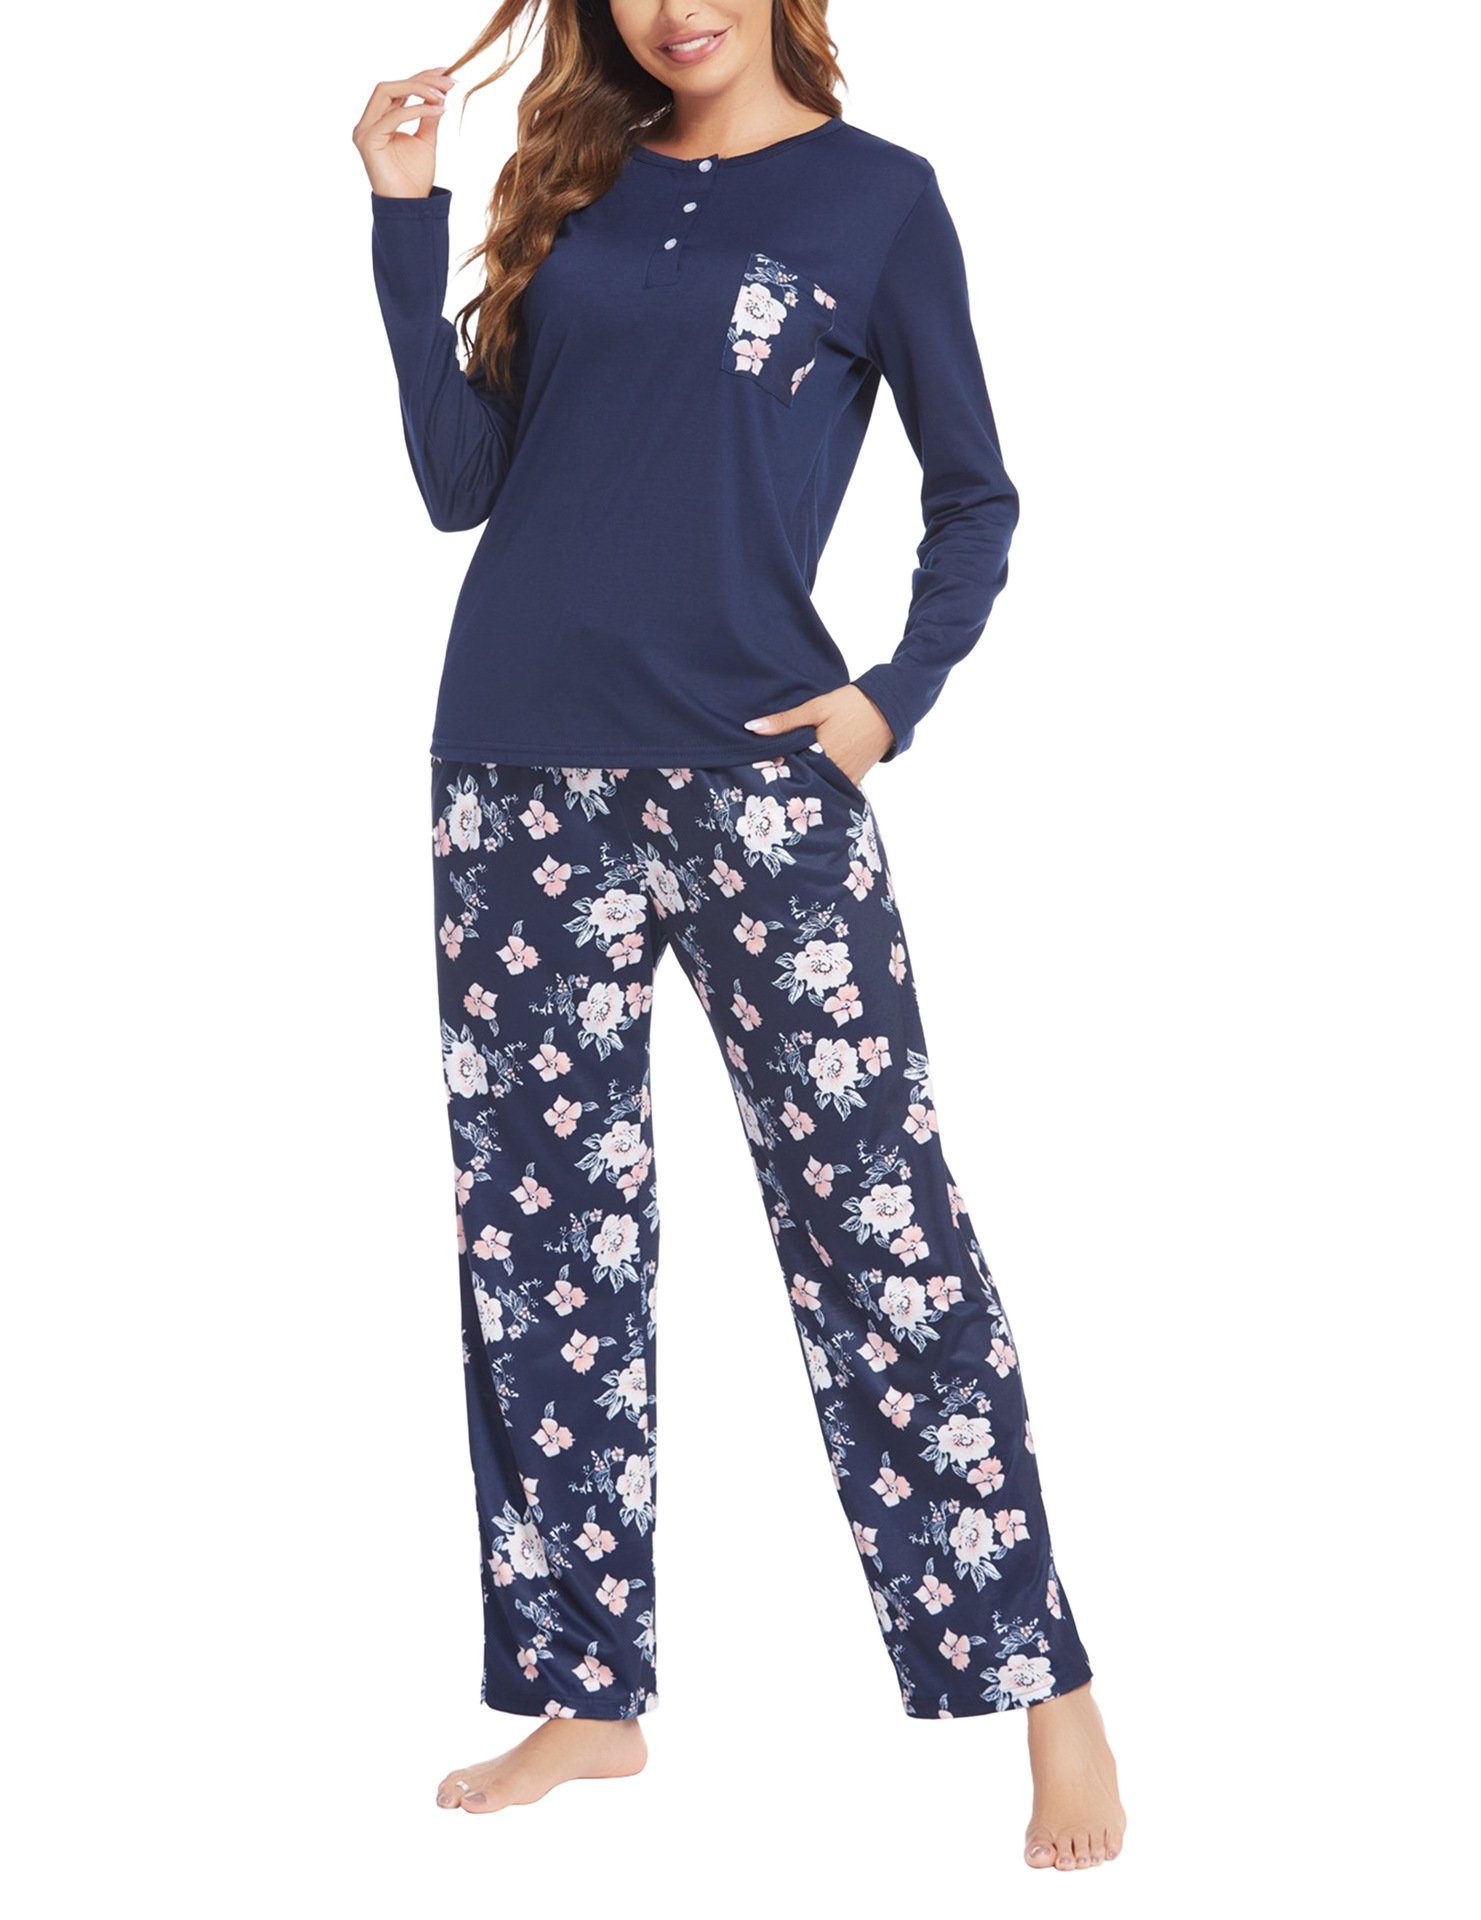 Sarfly Pyjama Damen-Pyjama-Set mit Taschen, Langarm-Shirt und Pyjama-Hose Loungewear-Set, Pyjama-Set mit drei Knöpfen Navy blau